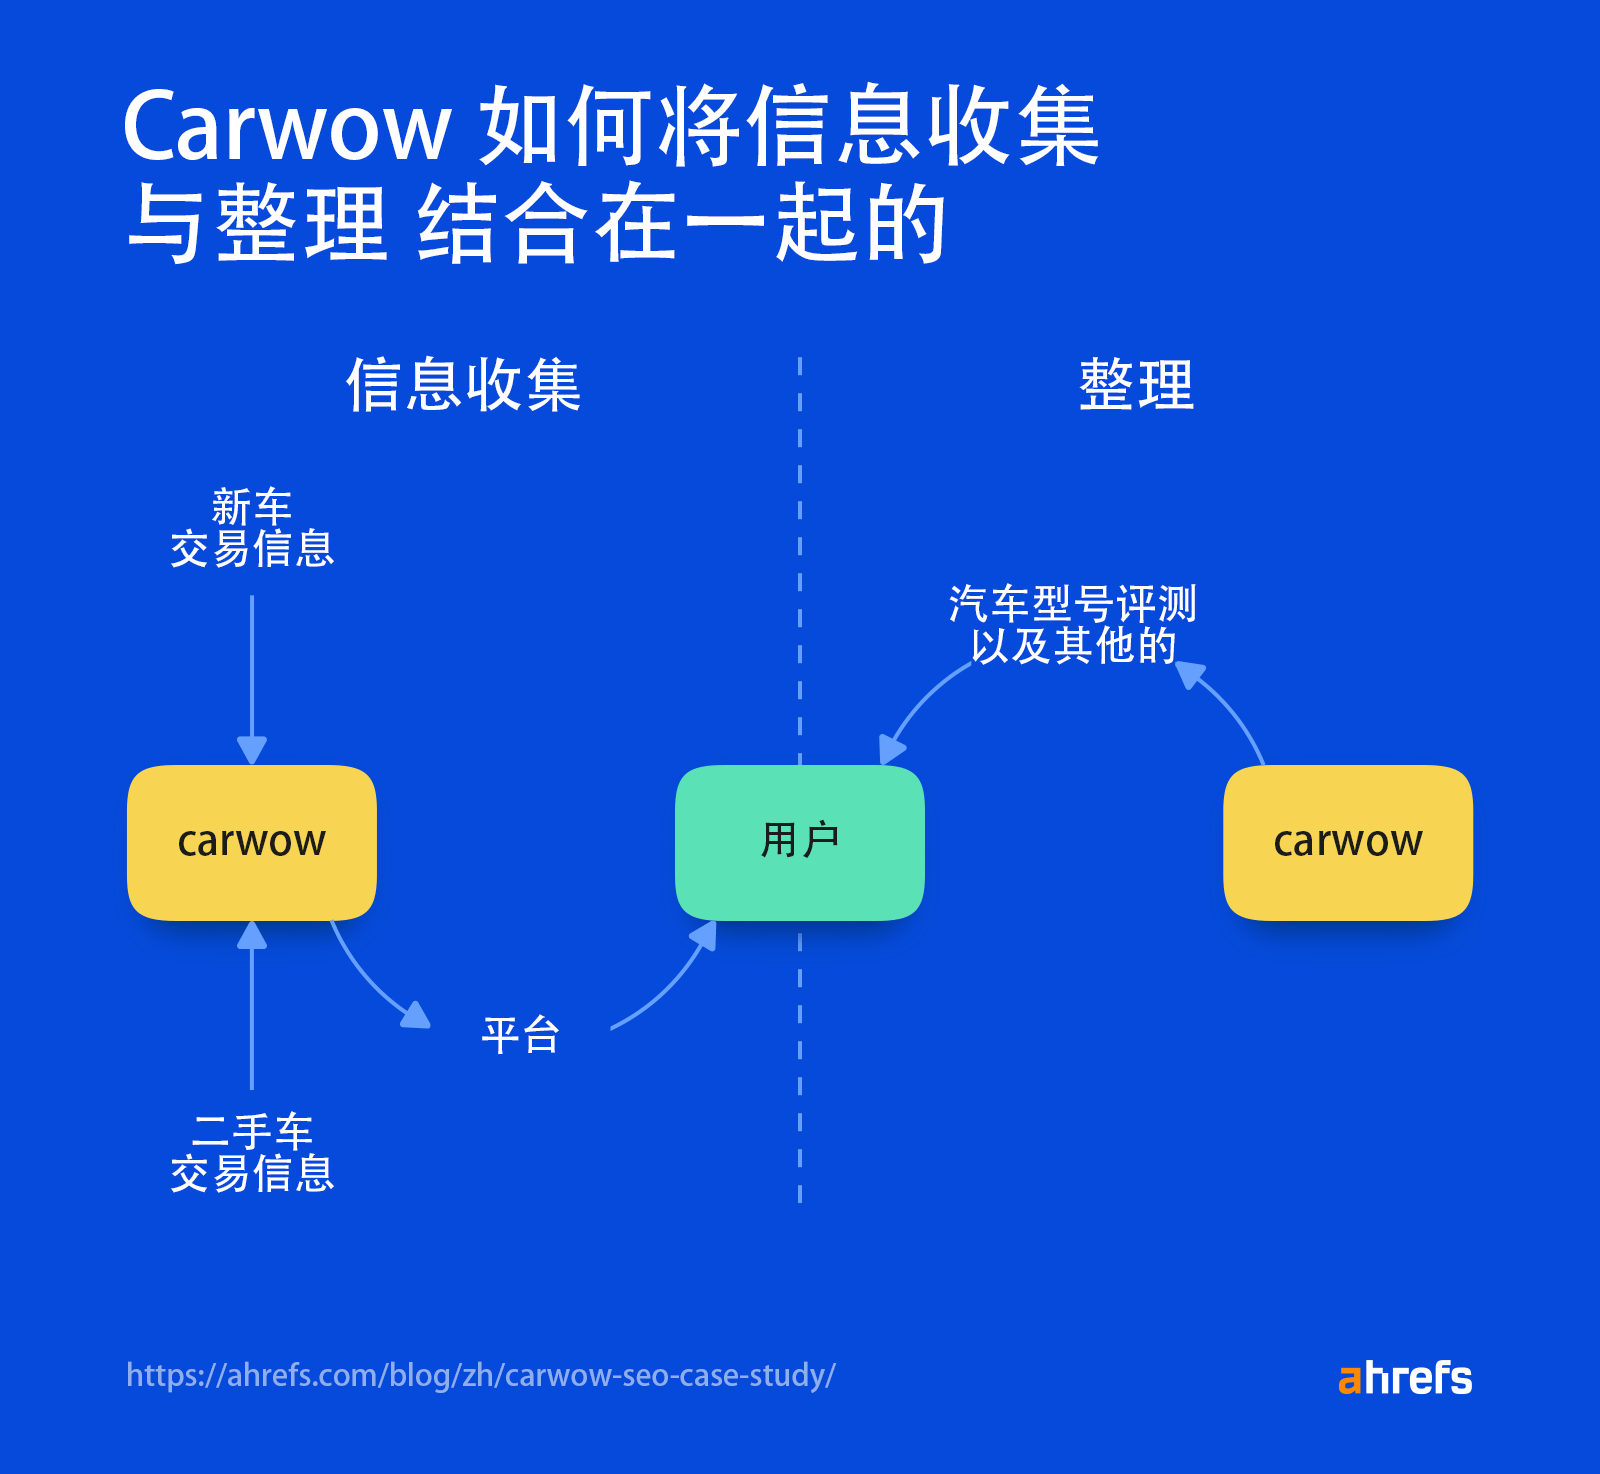 carwow 的信息汇集/综合策略